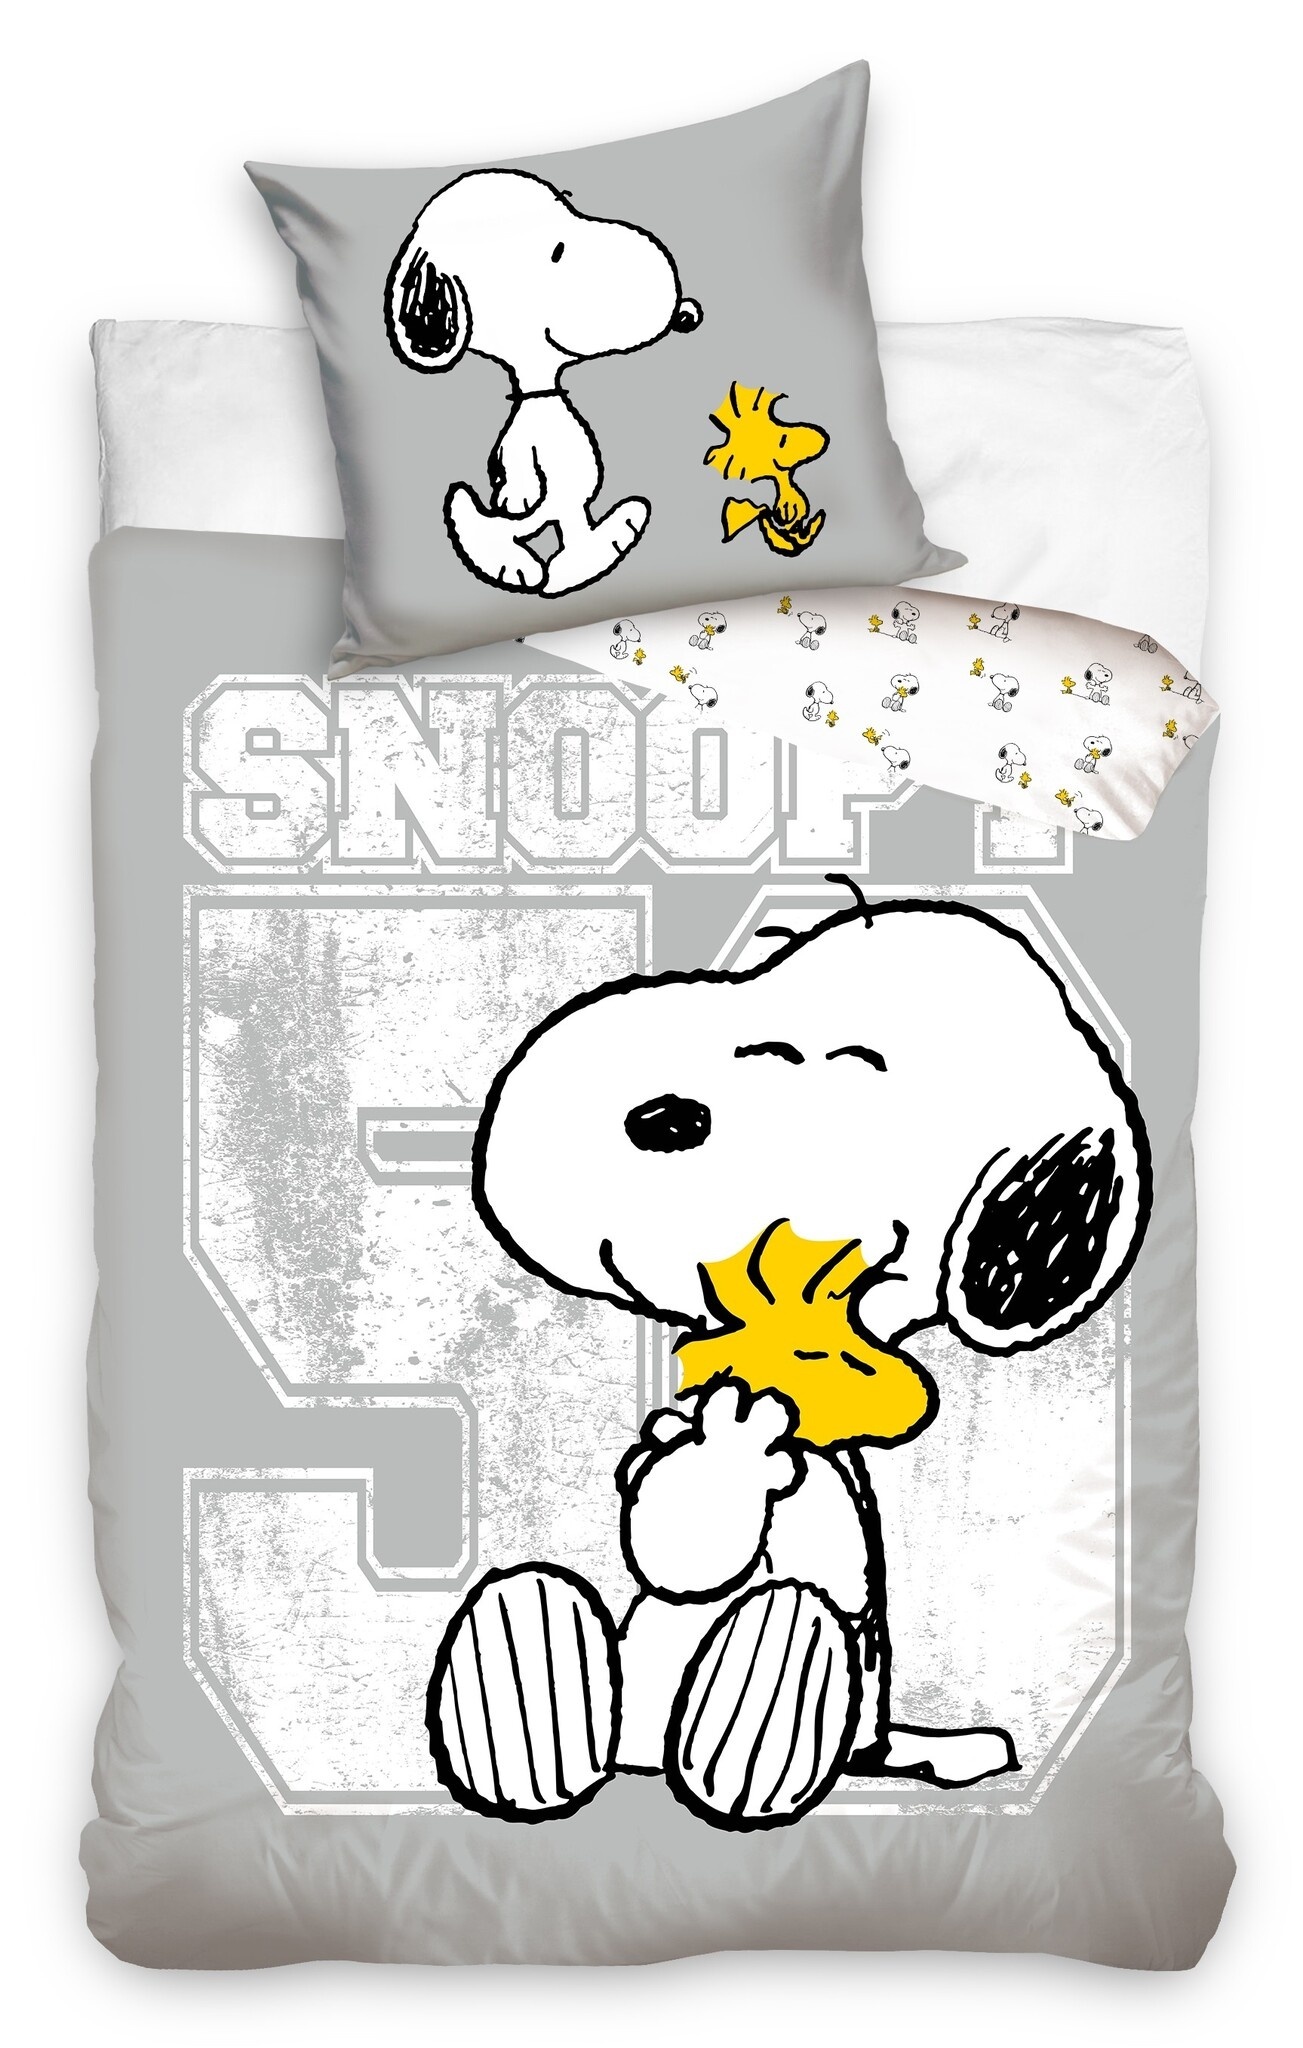 Snoopy dekbedovertrek hug 140 x 200 cm grijs - katoen